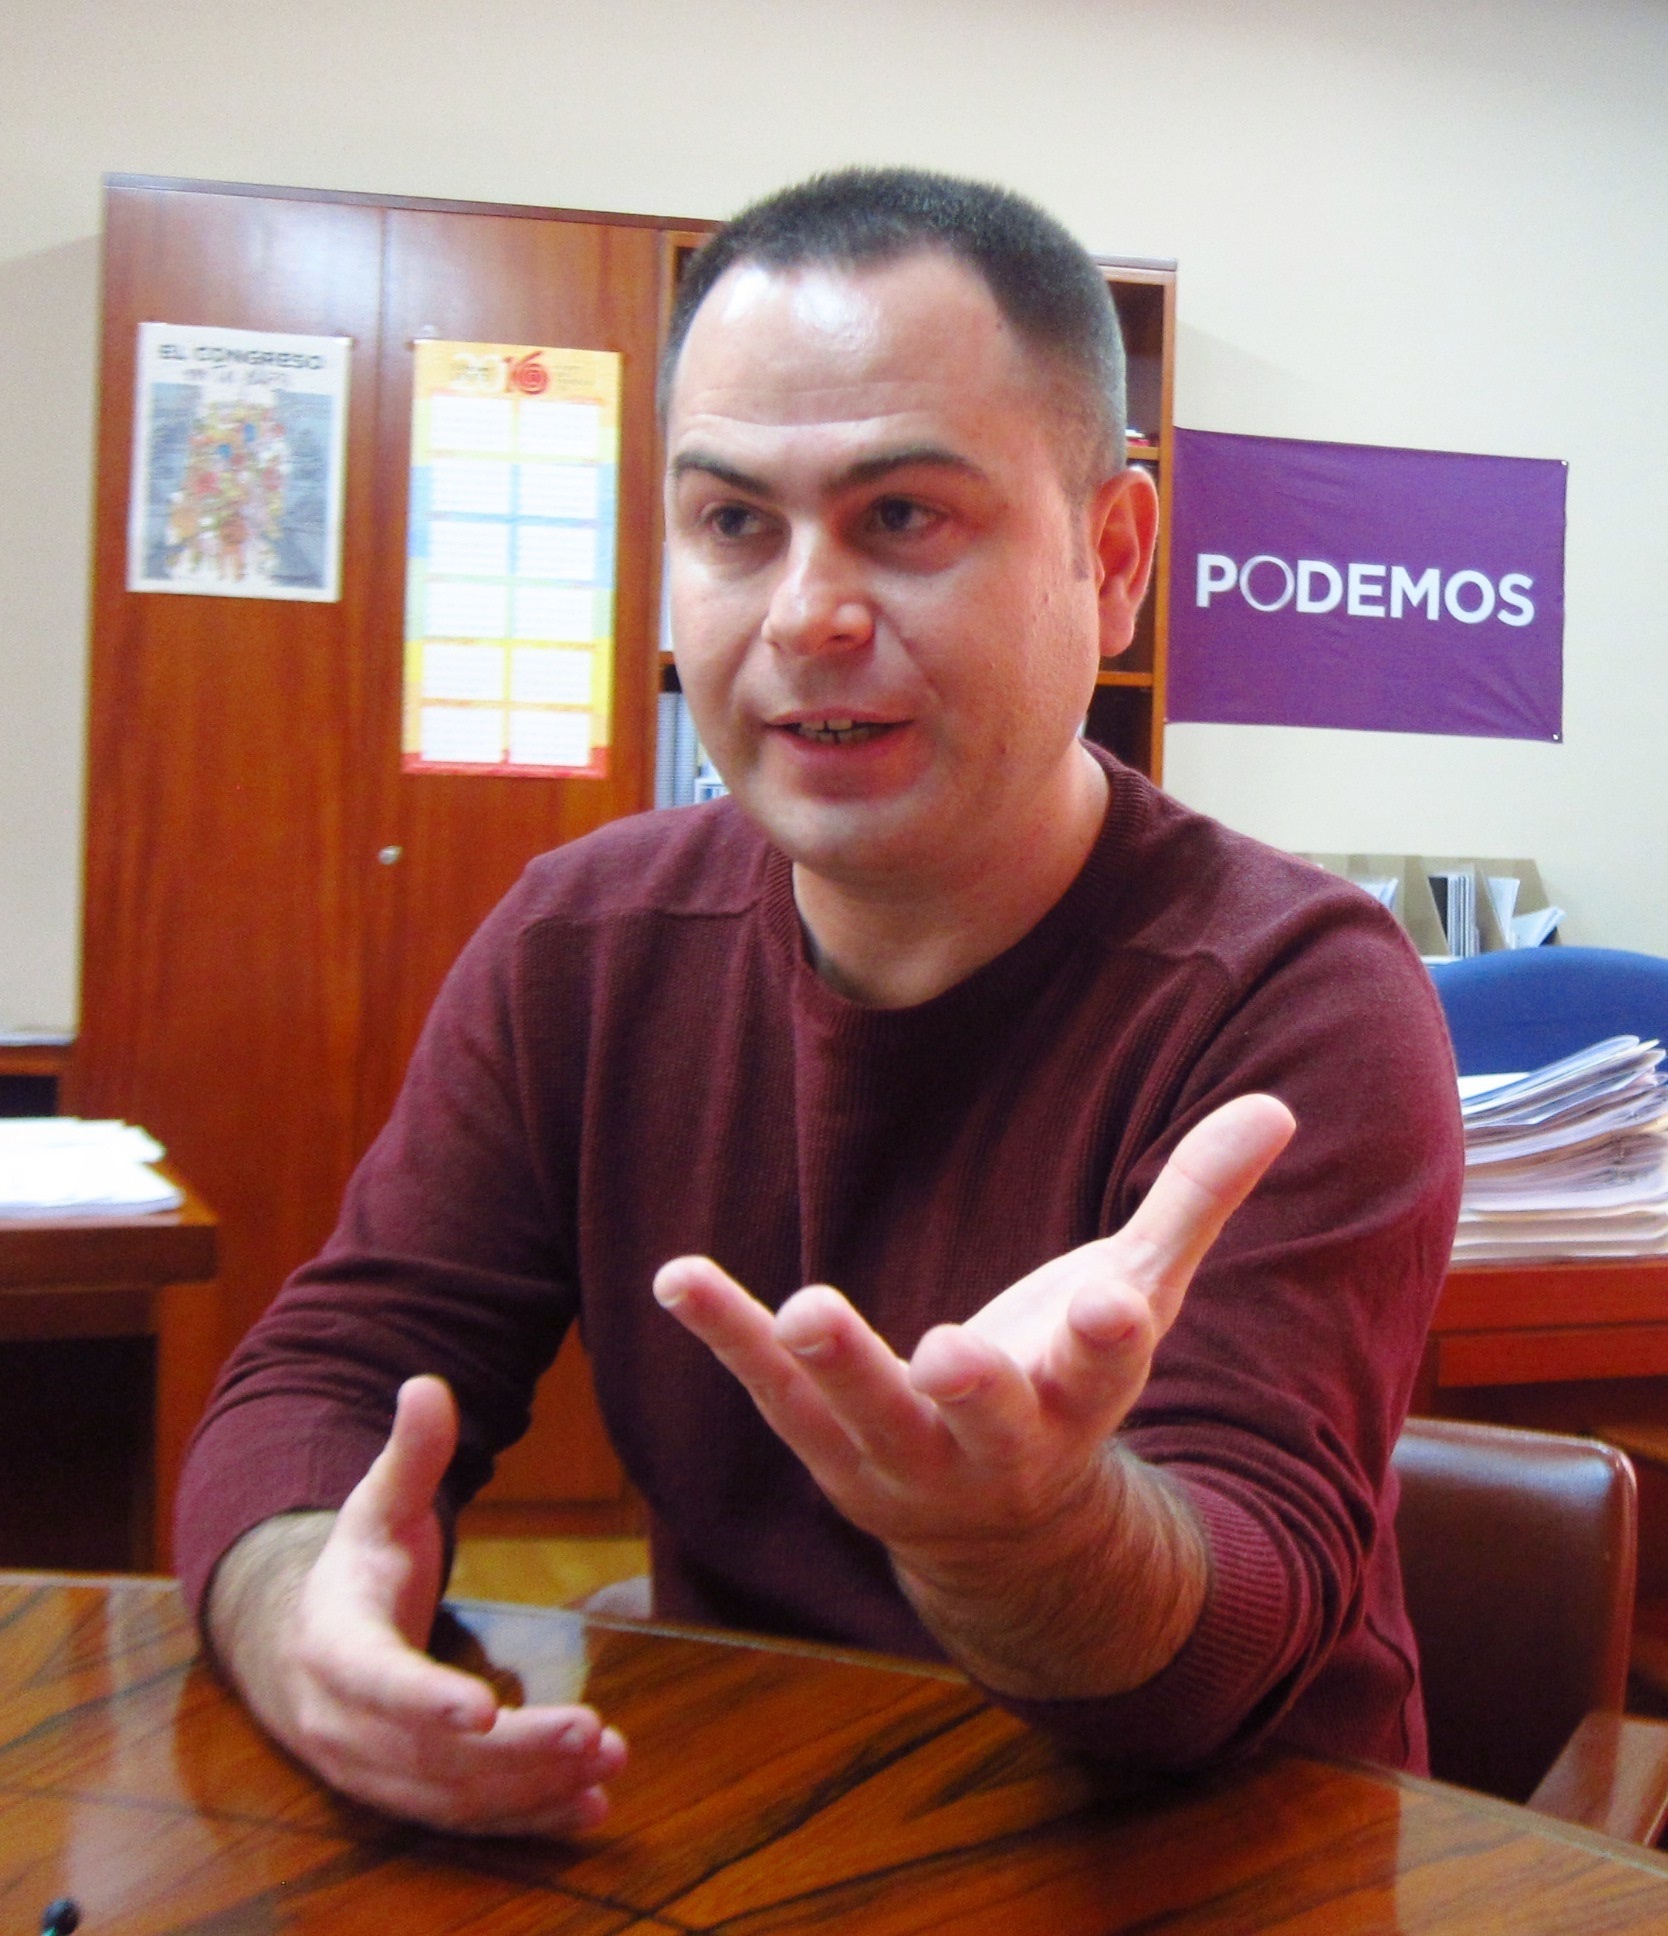 Llorente (Podemos C-LM) discrepa sobre la posible entrada al Gobierno de García-Page: “No vinimos a conseguir sillones”